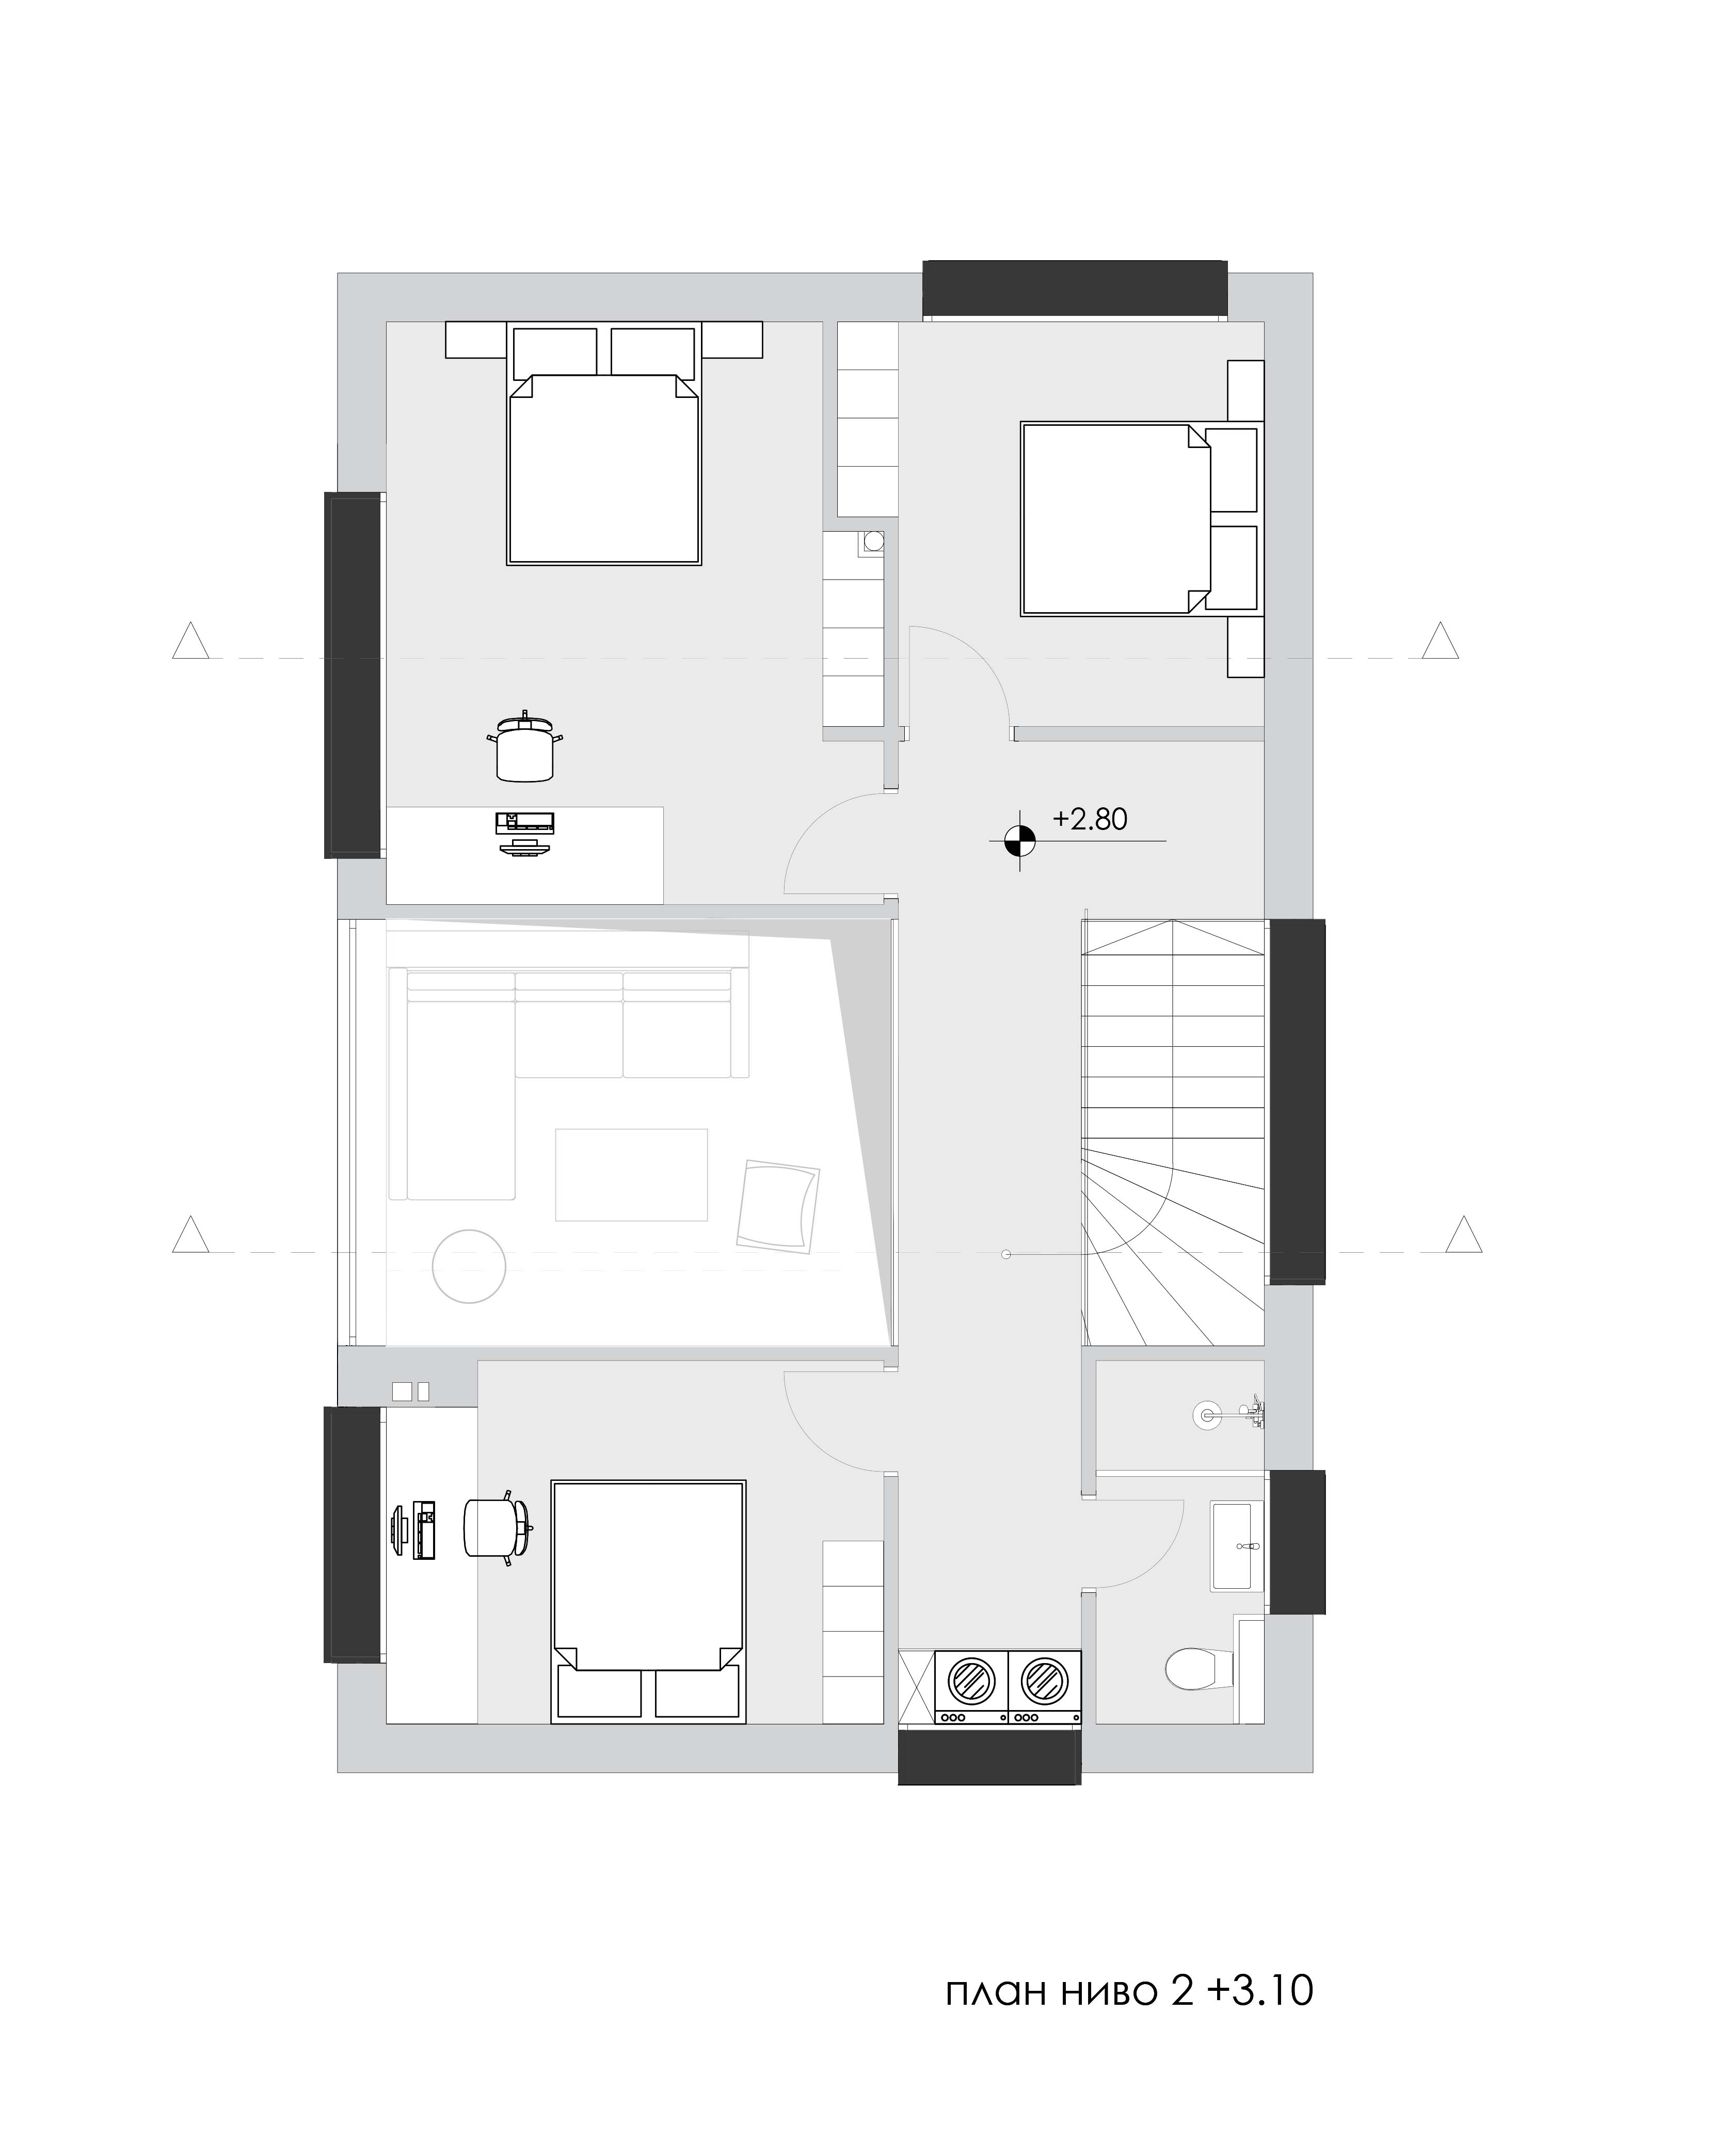 363-къща-inward-еднофамилна-жилищна-сграда-пловдив-архитектура-разпределение-етаж-2.jpg